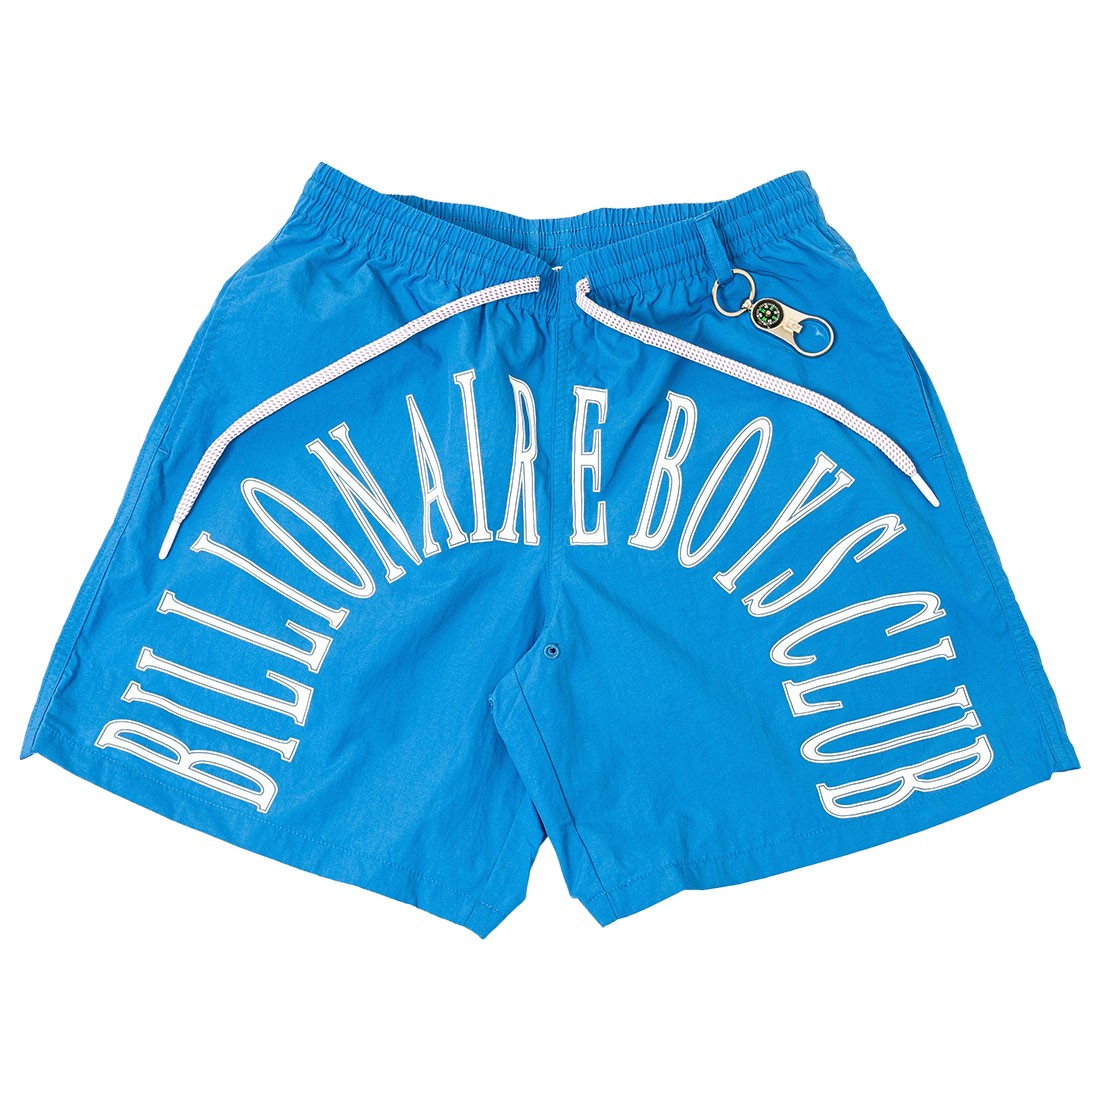 Billionaire Boys Club Men Sunrise shorts zur (blue / palace blue)